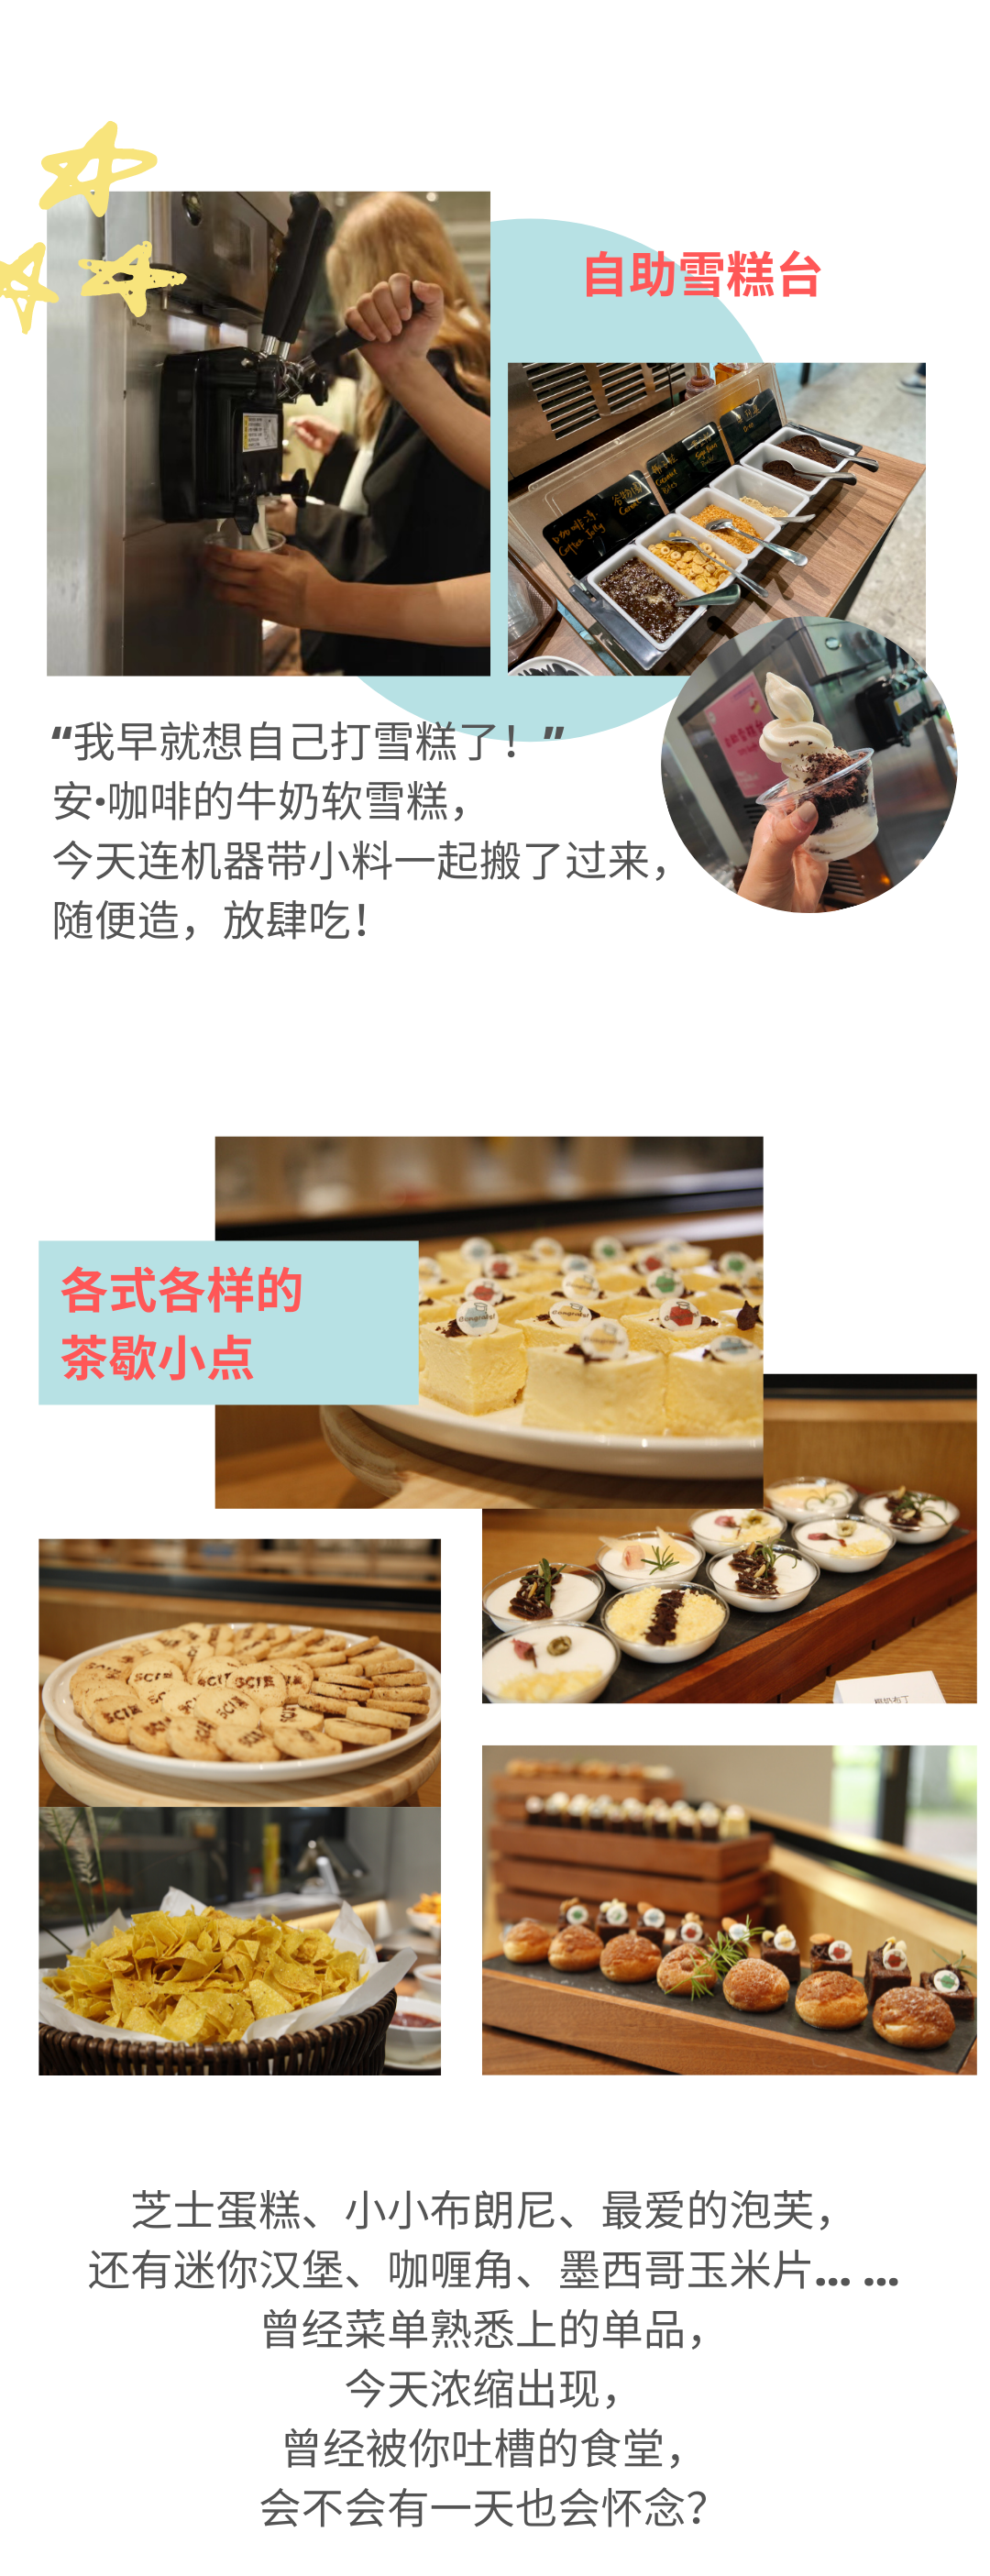 深国交食堂 - “深圳沐知餐饮” 在毕业典礼这一天的真情流露  第4张